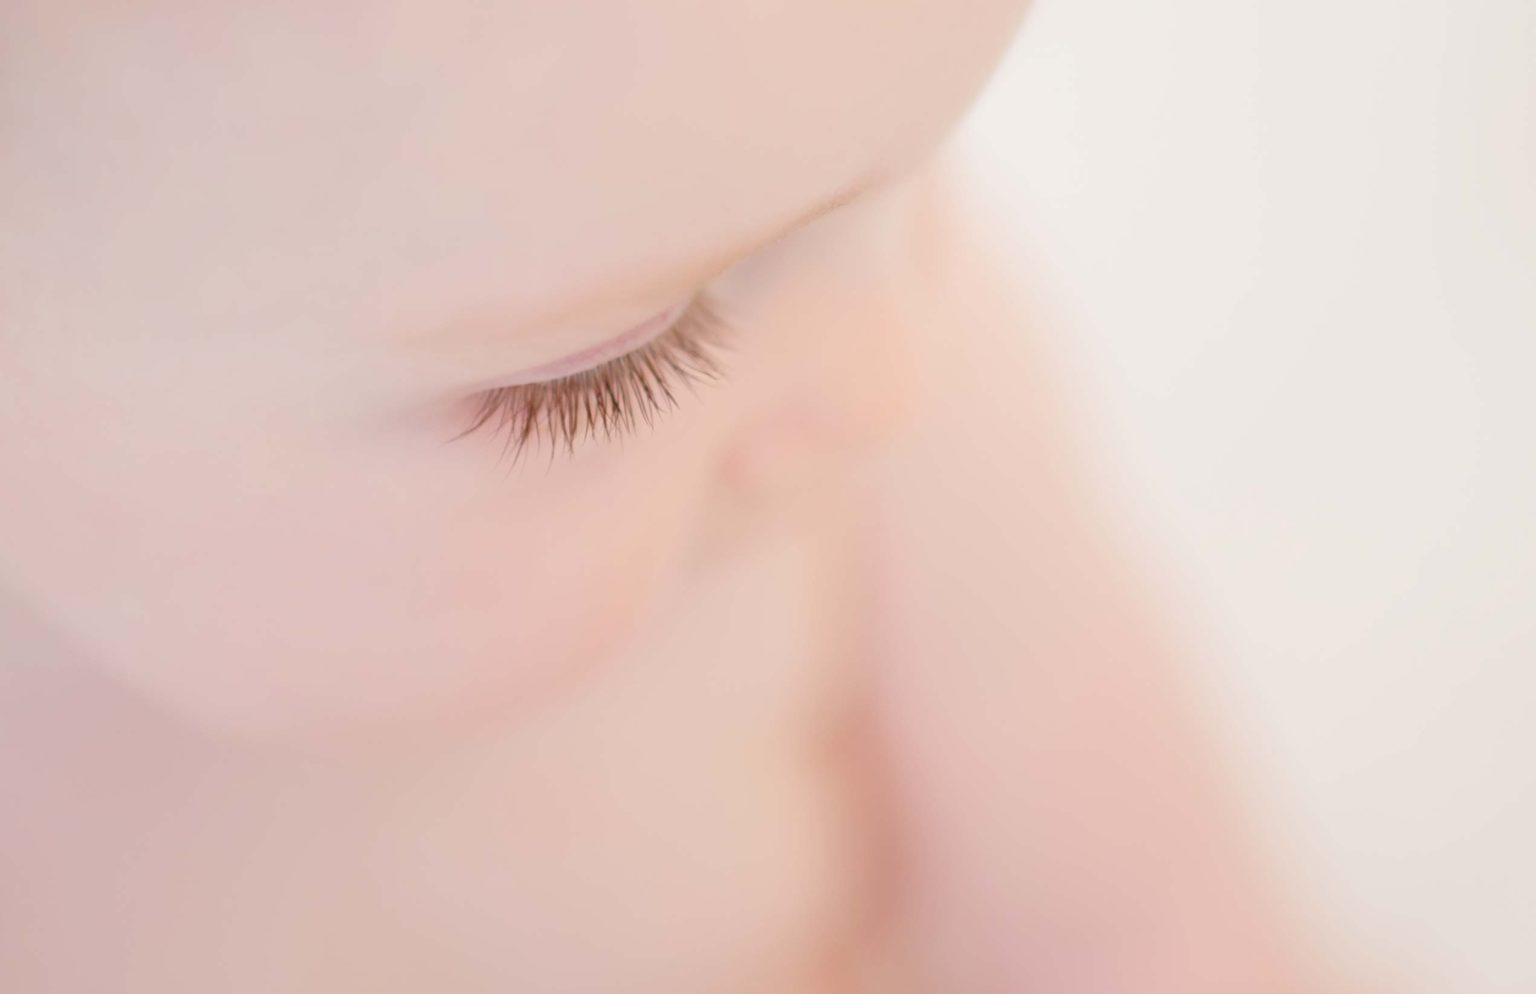 Closeup photo of baby's beautiful eyelashes